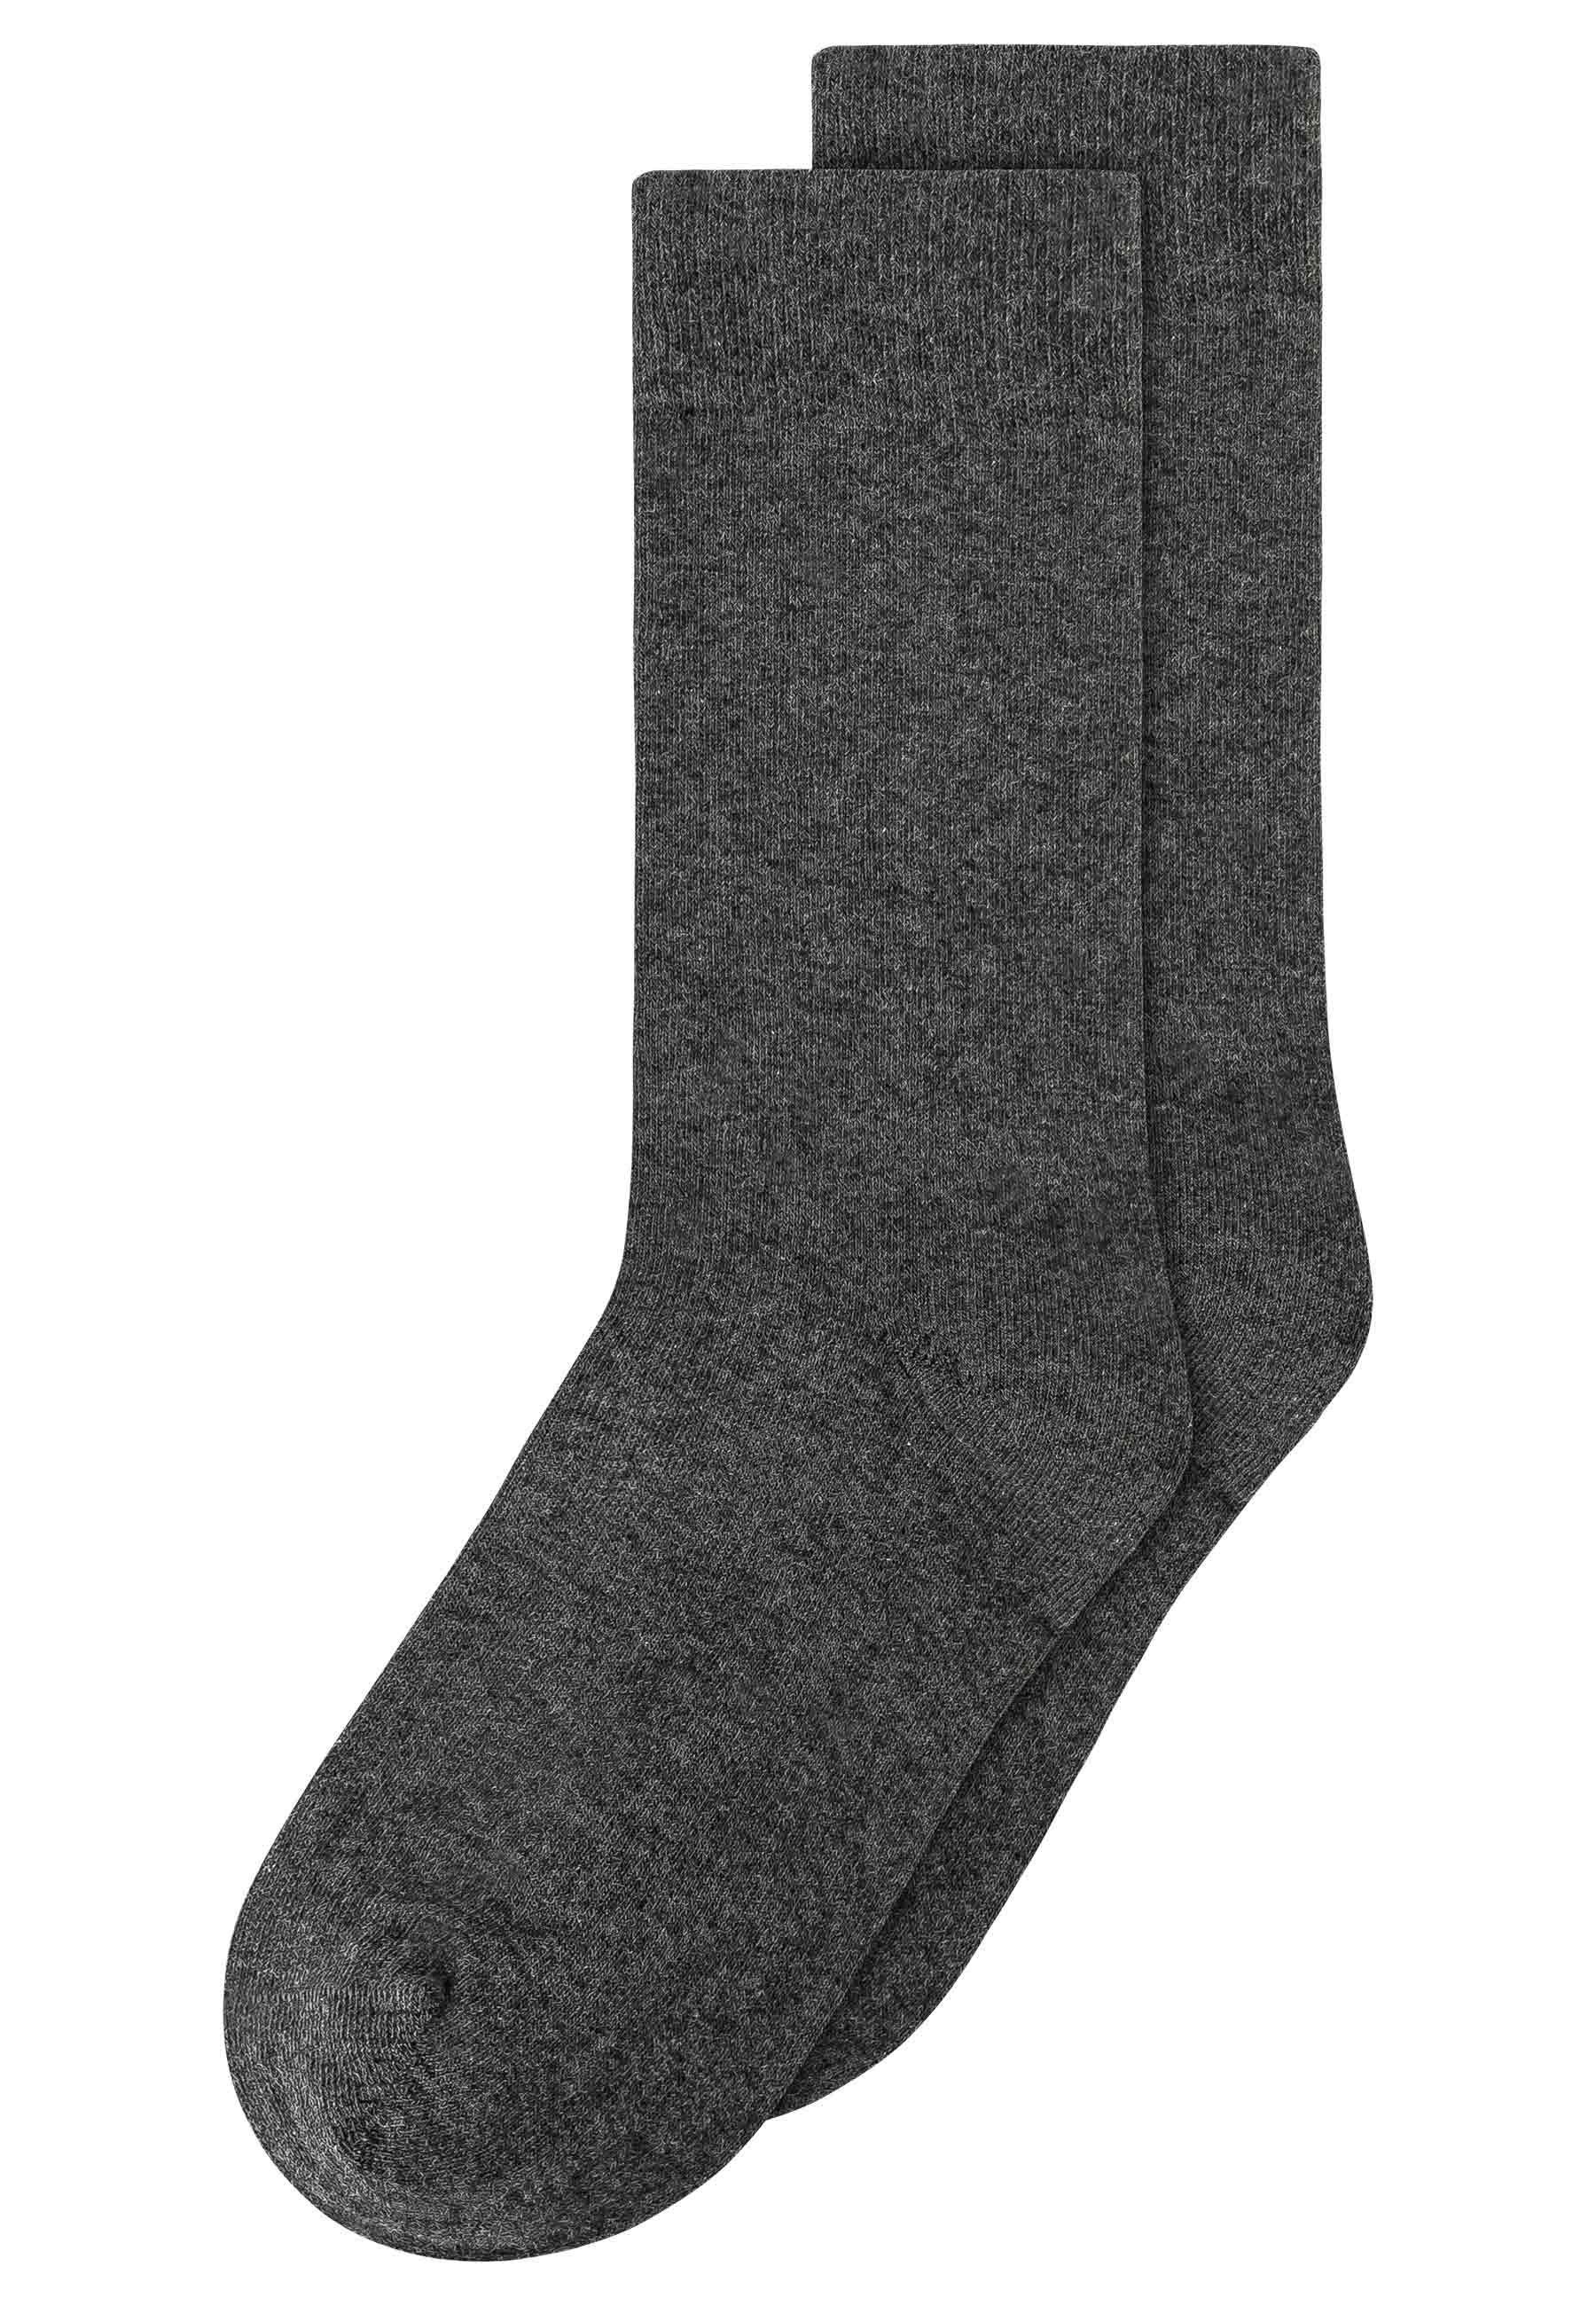 MELA Socken Basic Pack 2er Socken melange anthrazit